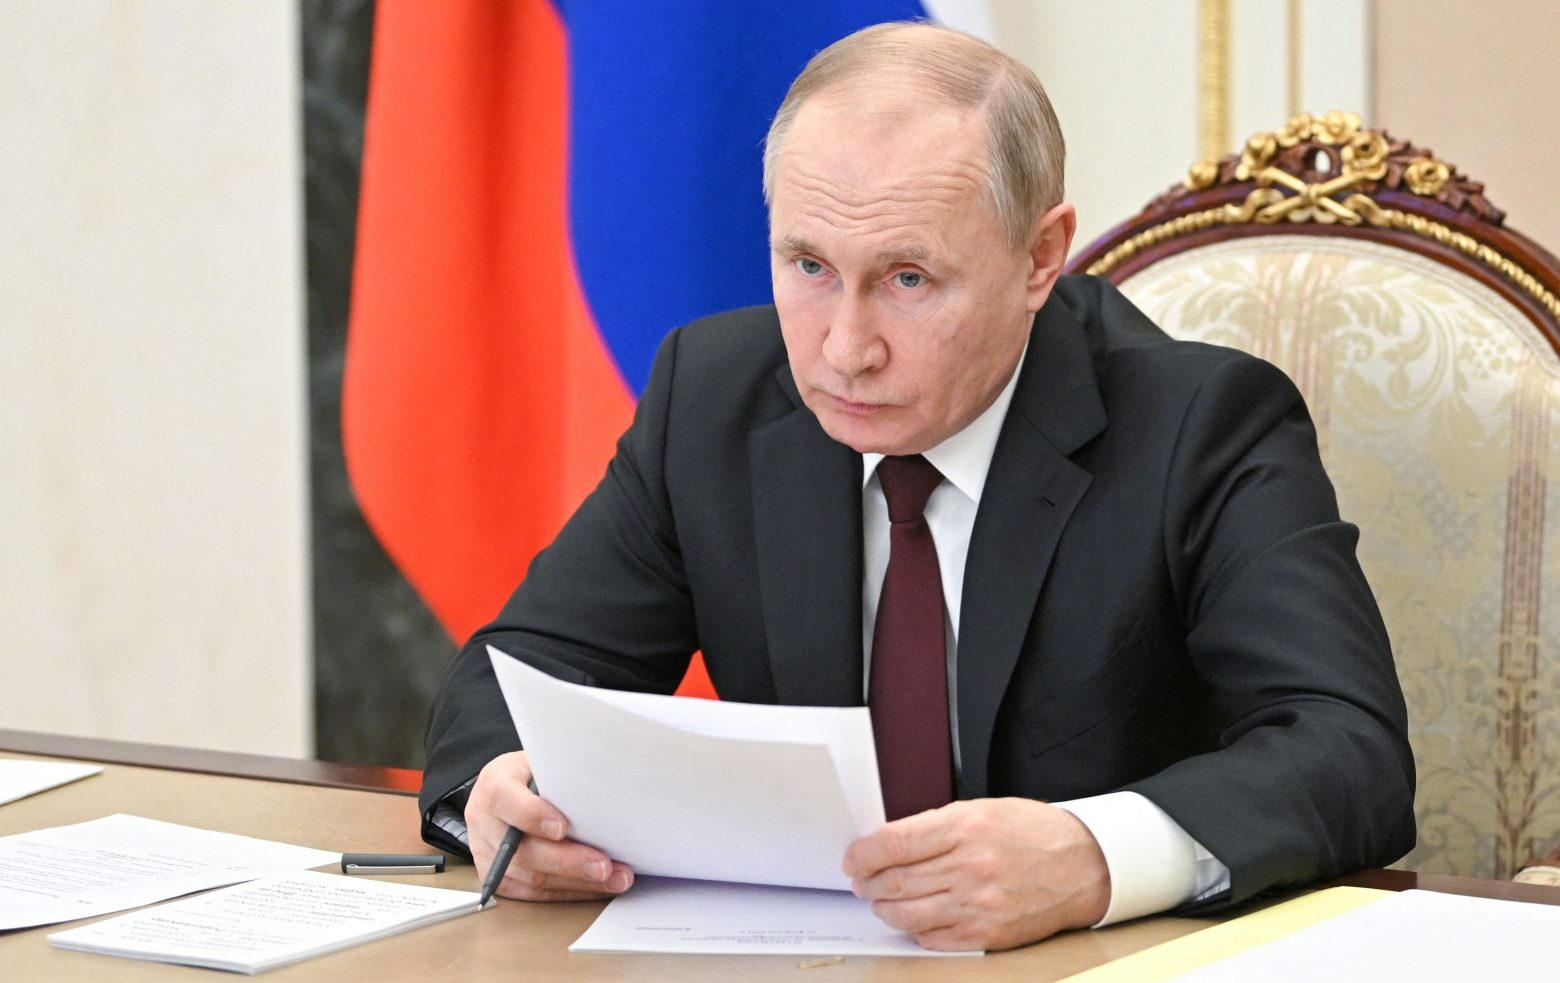 Βλαντιμίρ Πούτιν: Σκληρός διαπραγματευτής ή… παρανοϊκός; – Οι αναλυτές διχάζονται